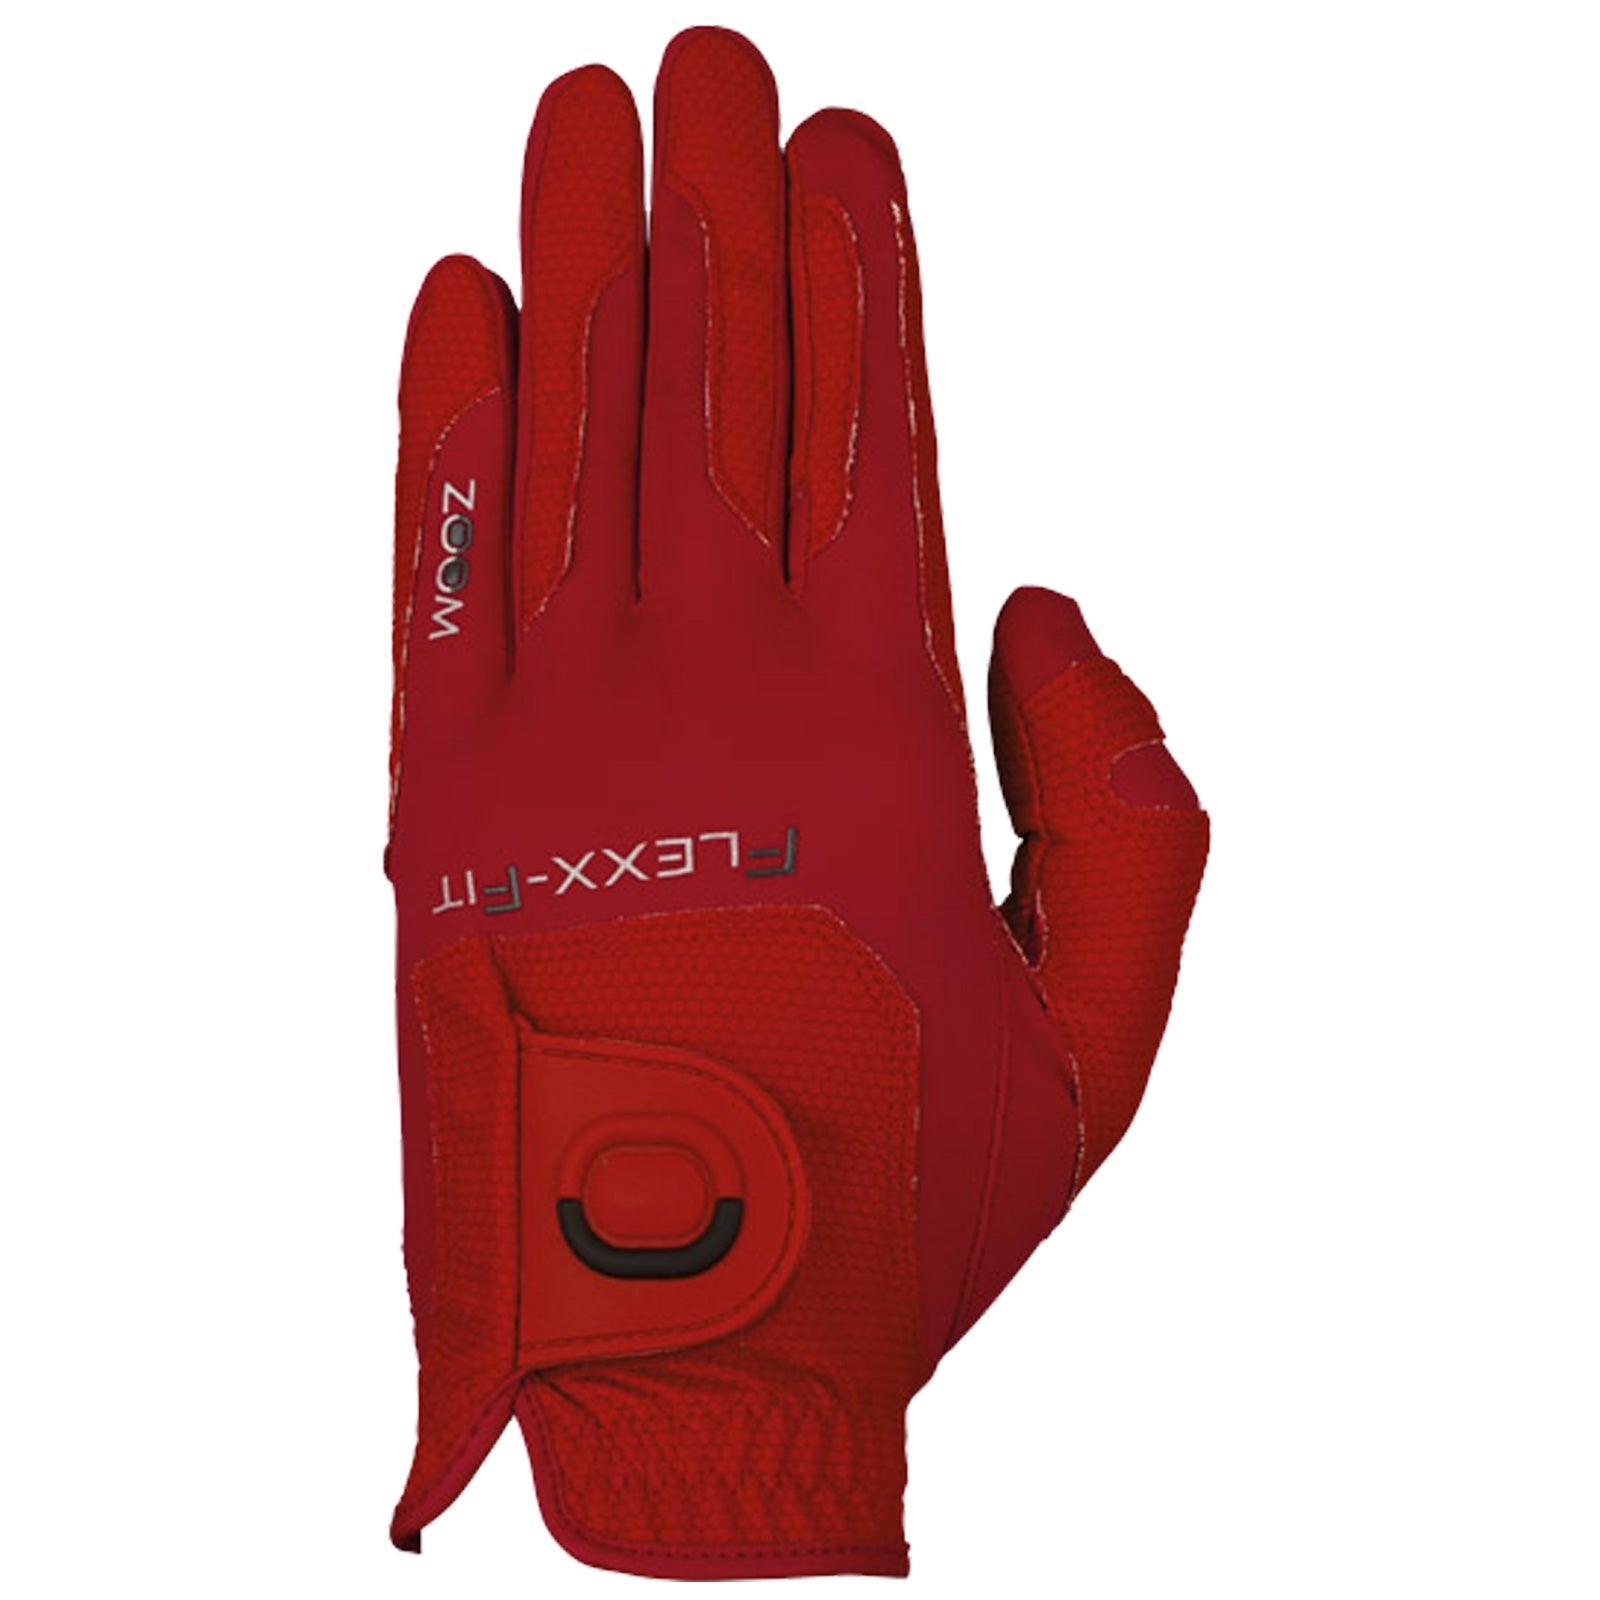 Zoom Ladies Left Hand Flexx Fit WEATHER Golf Glove - One Size